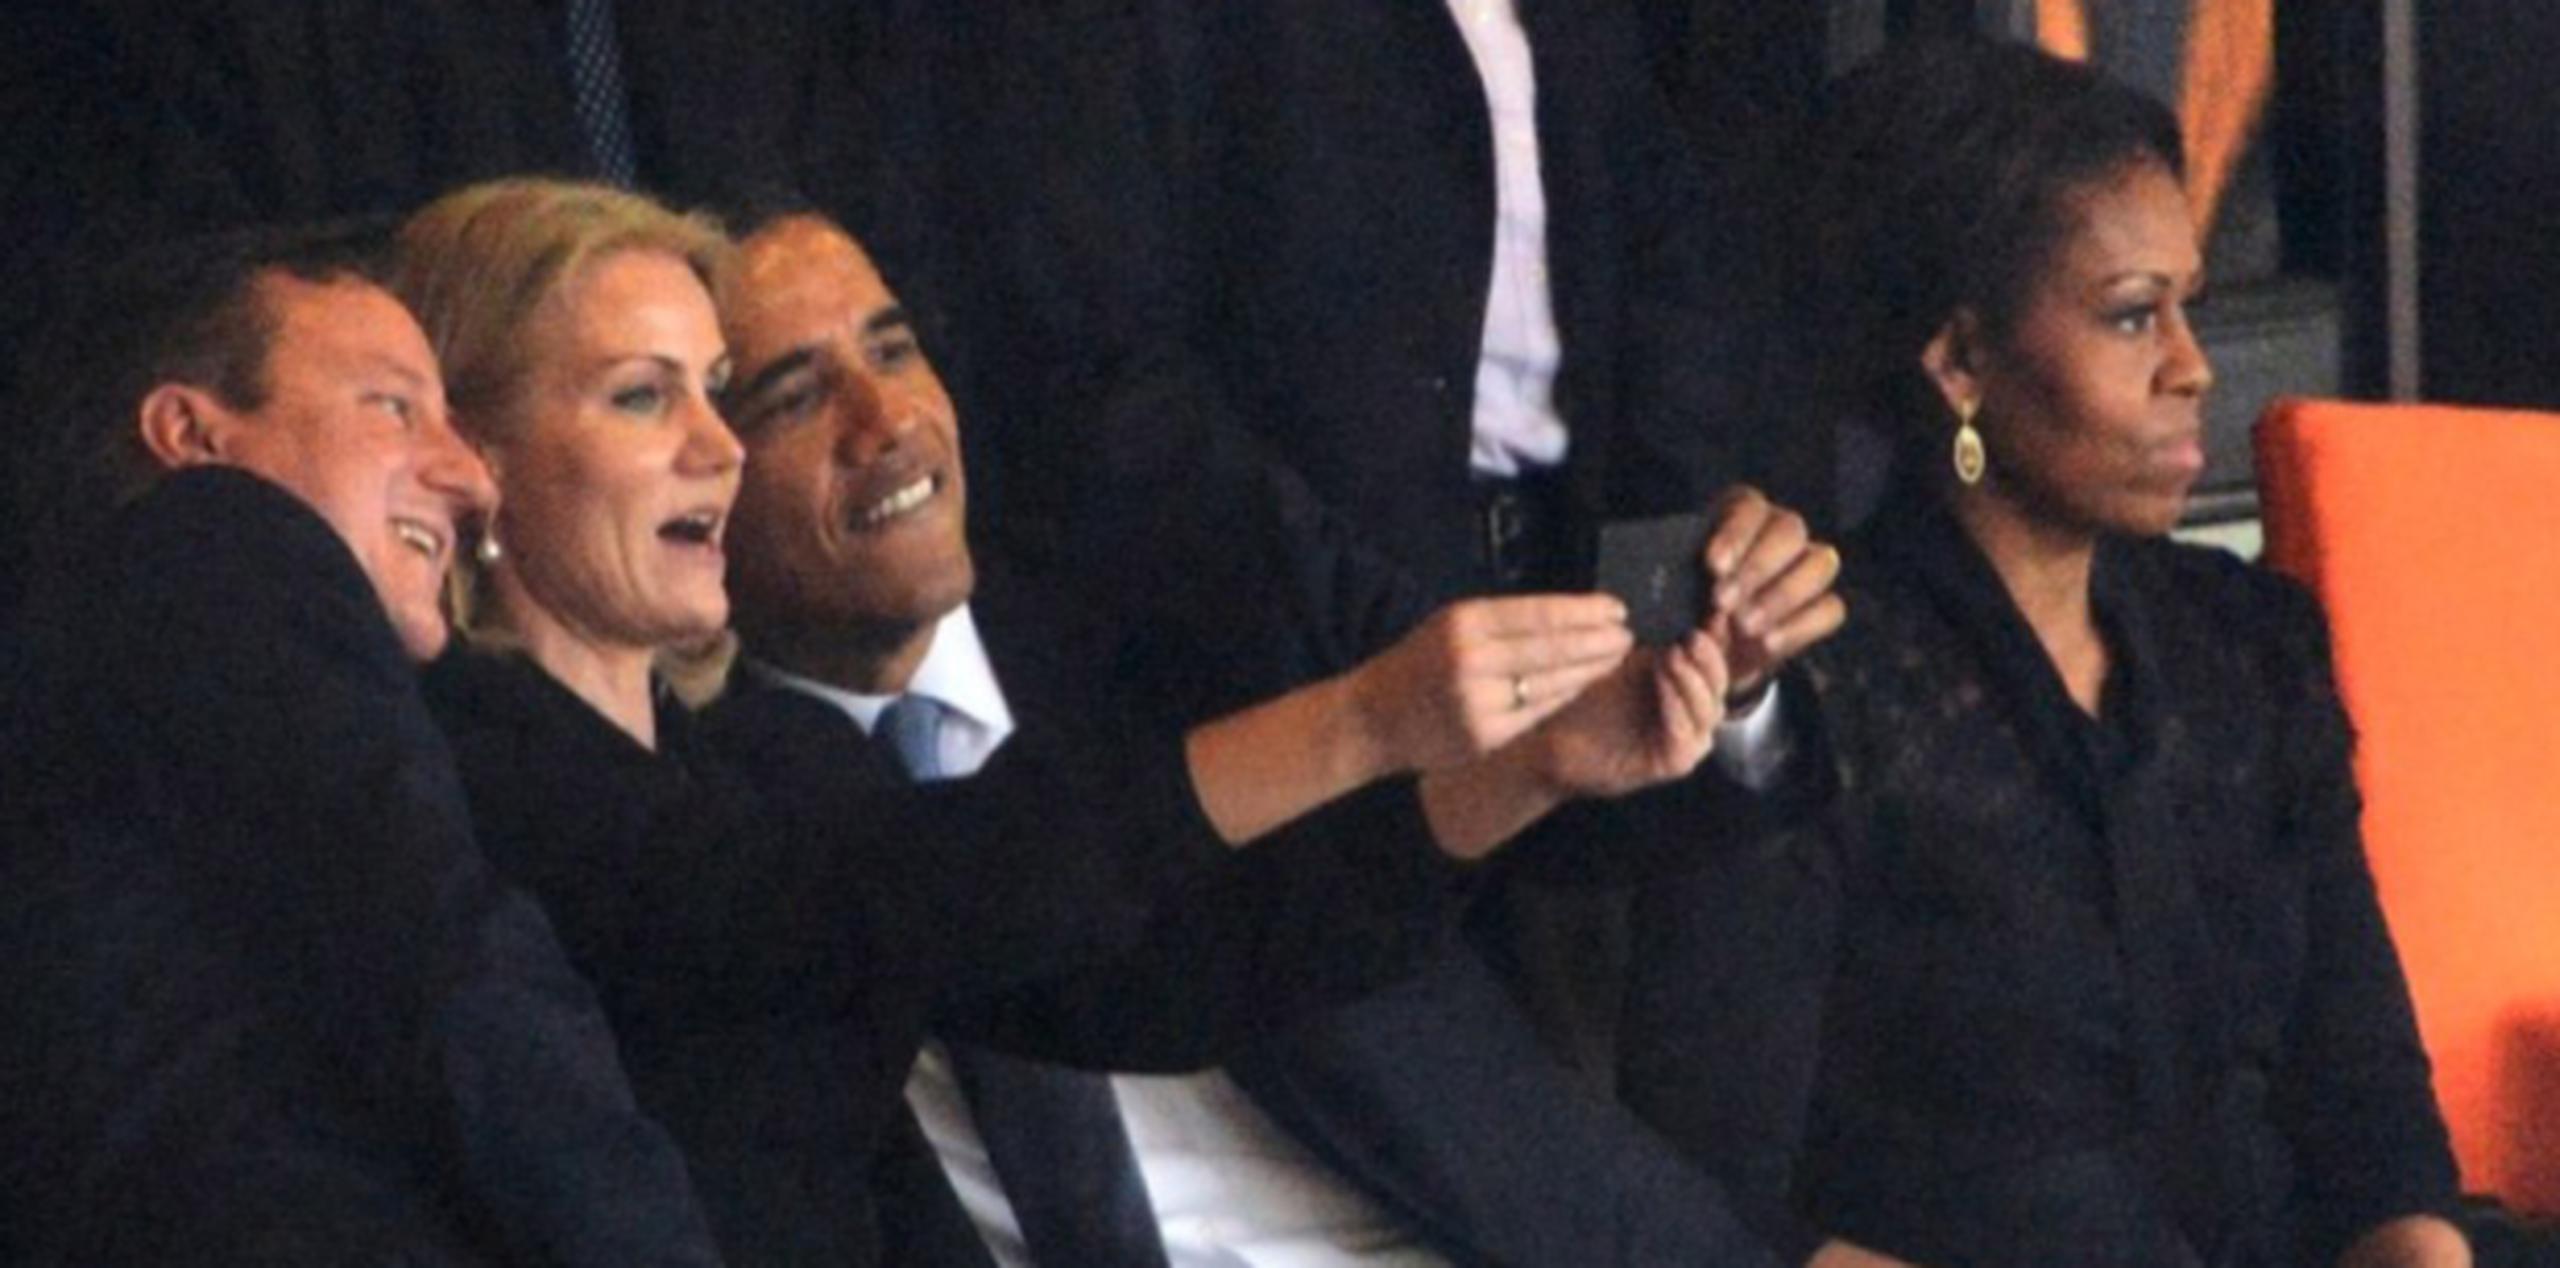 Al fotógrafo le sorprendió la reacción ante la aparente molestia de la primera dama de los Estados Unidos, Michelle Obama, por el acto ya que asegura que esto fue una mera coincidencia y que segundos antes estaba bromeando con el trío. (AFP  / Roberto Schmidt)
